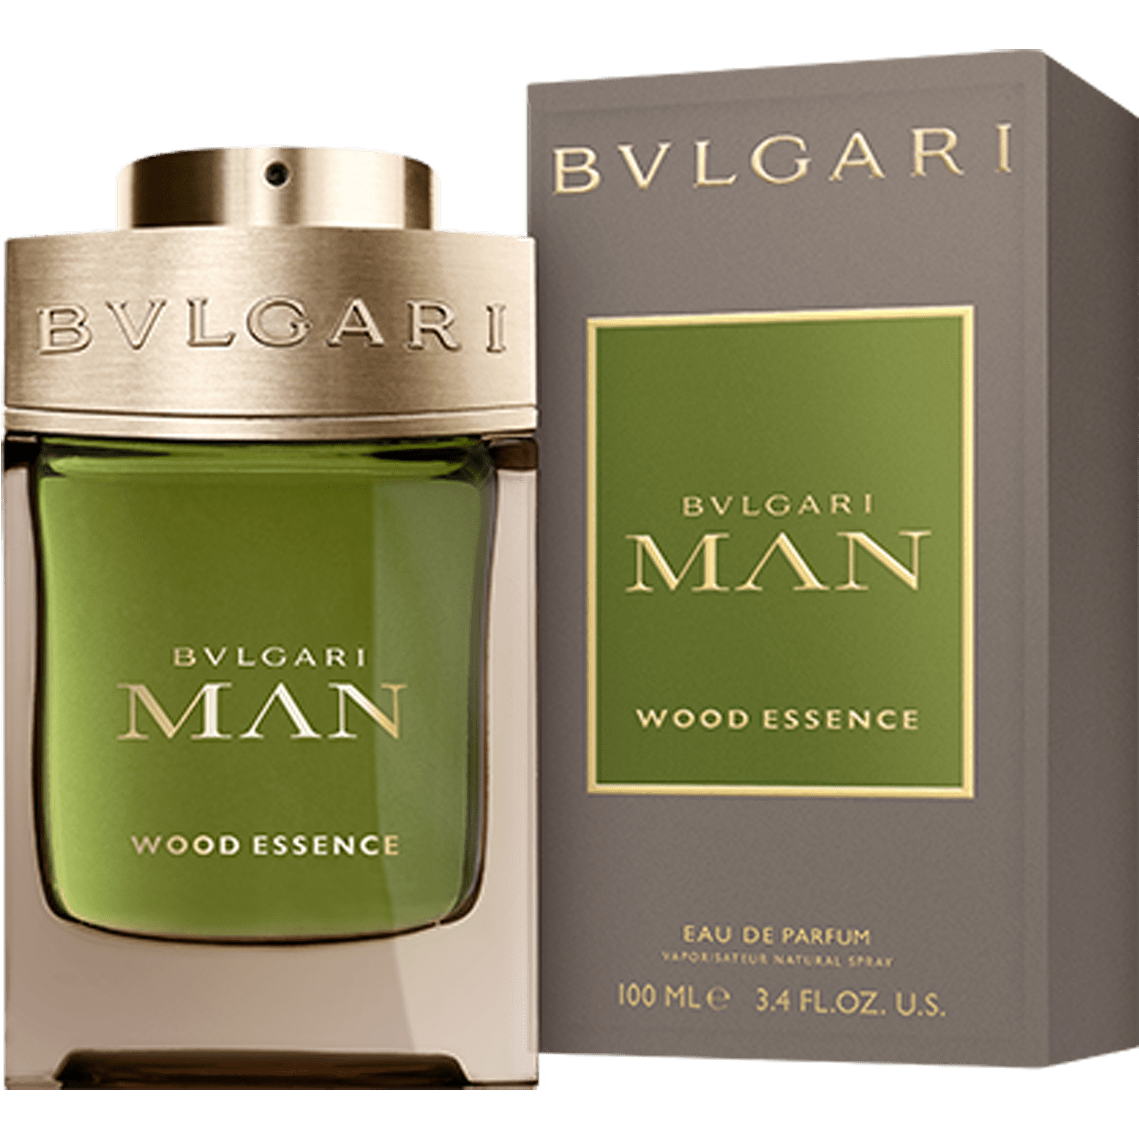 Bvlgari Man Wood Essence 100ml - Fragrance Deliver SA